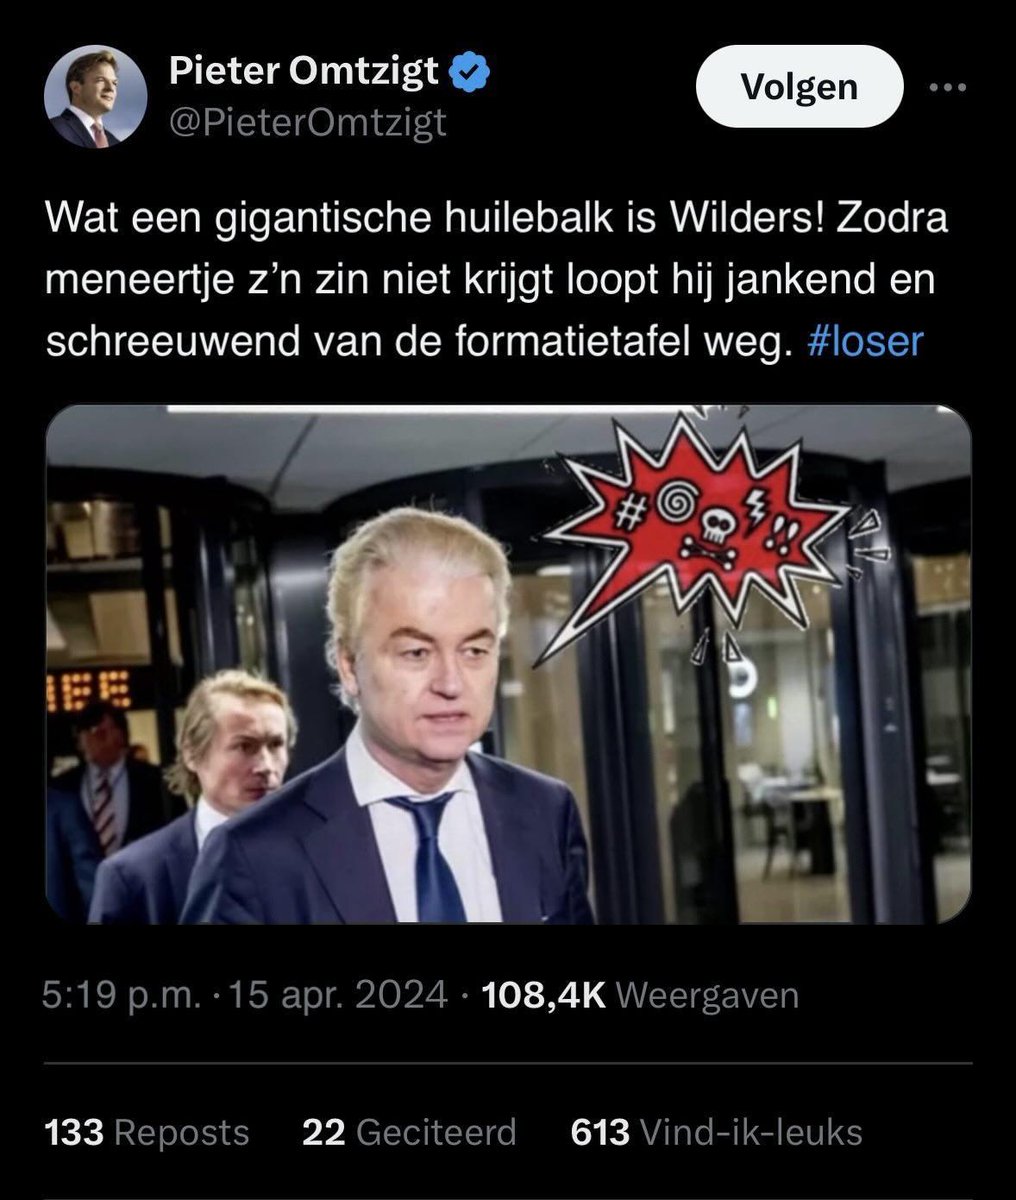 Het zou toch vet grappig zijn wanneer Omtzigt nu wraak zou nemen op Geert Wilders voor al die eerdere haat berichten… 😂